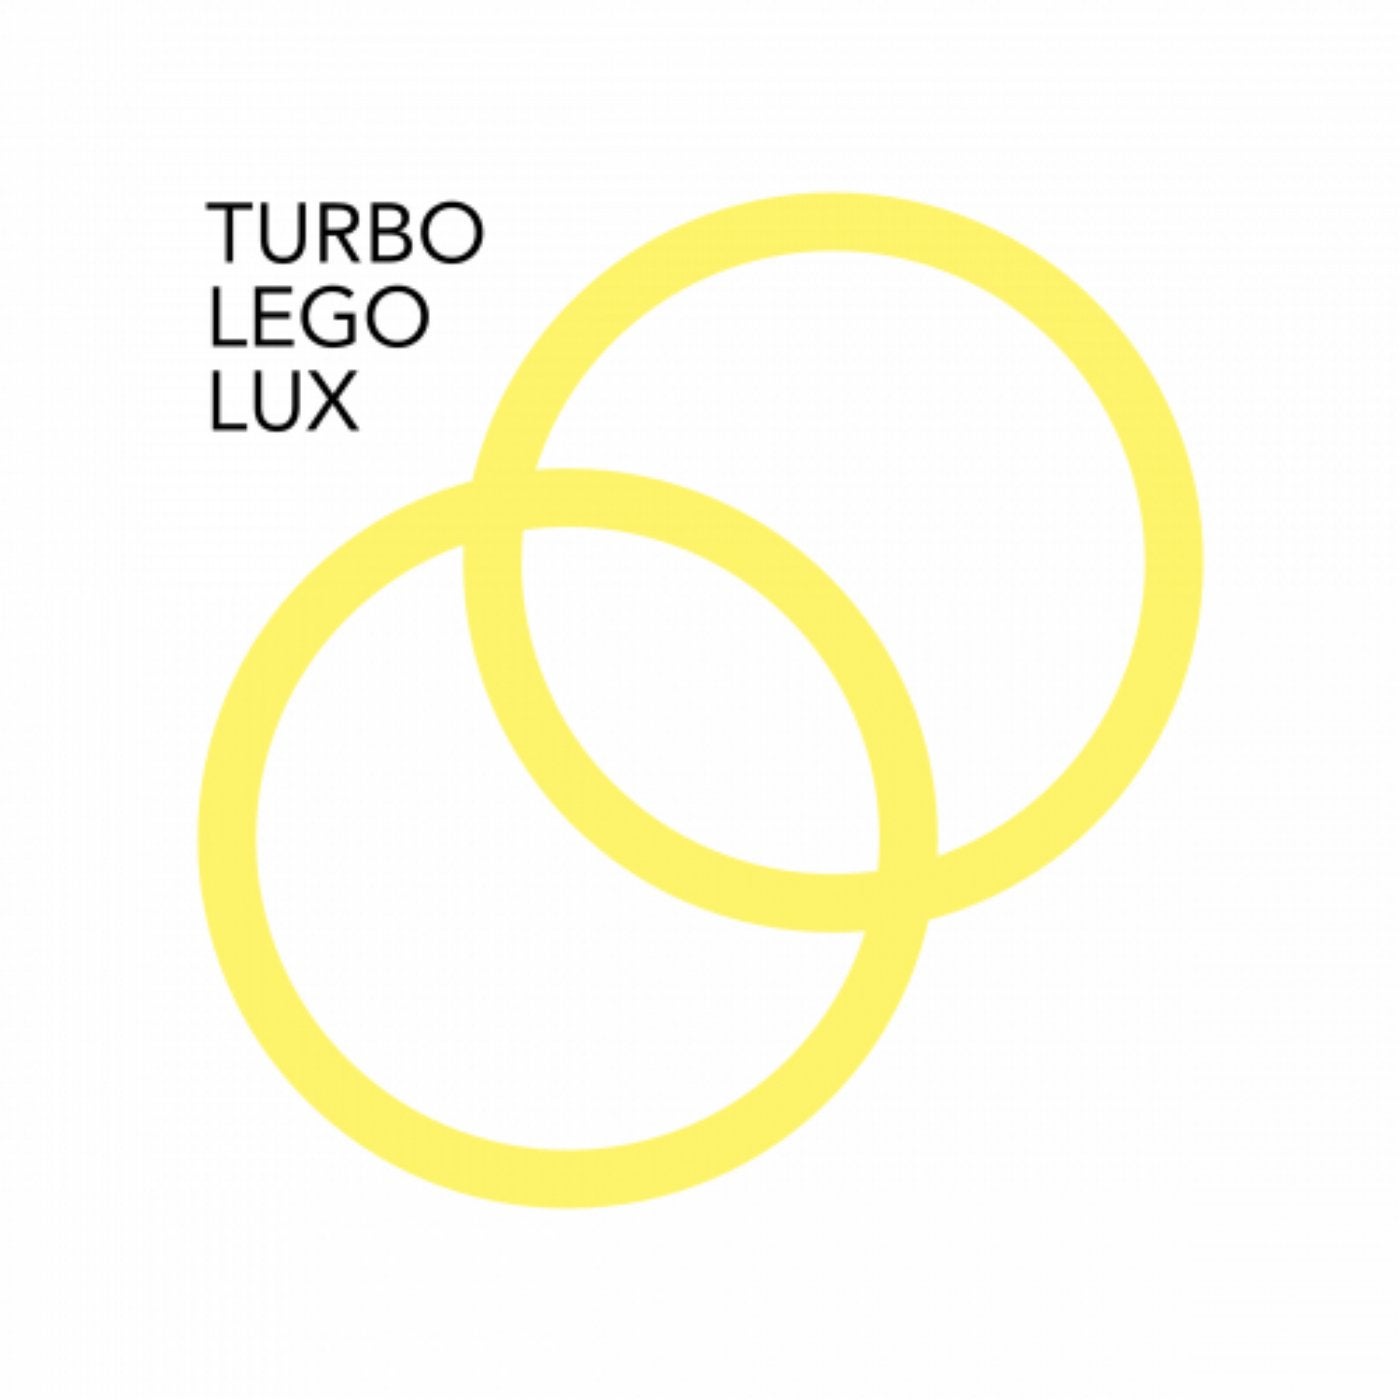 Turbo Lego Lux